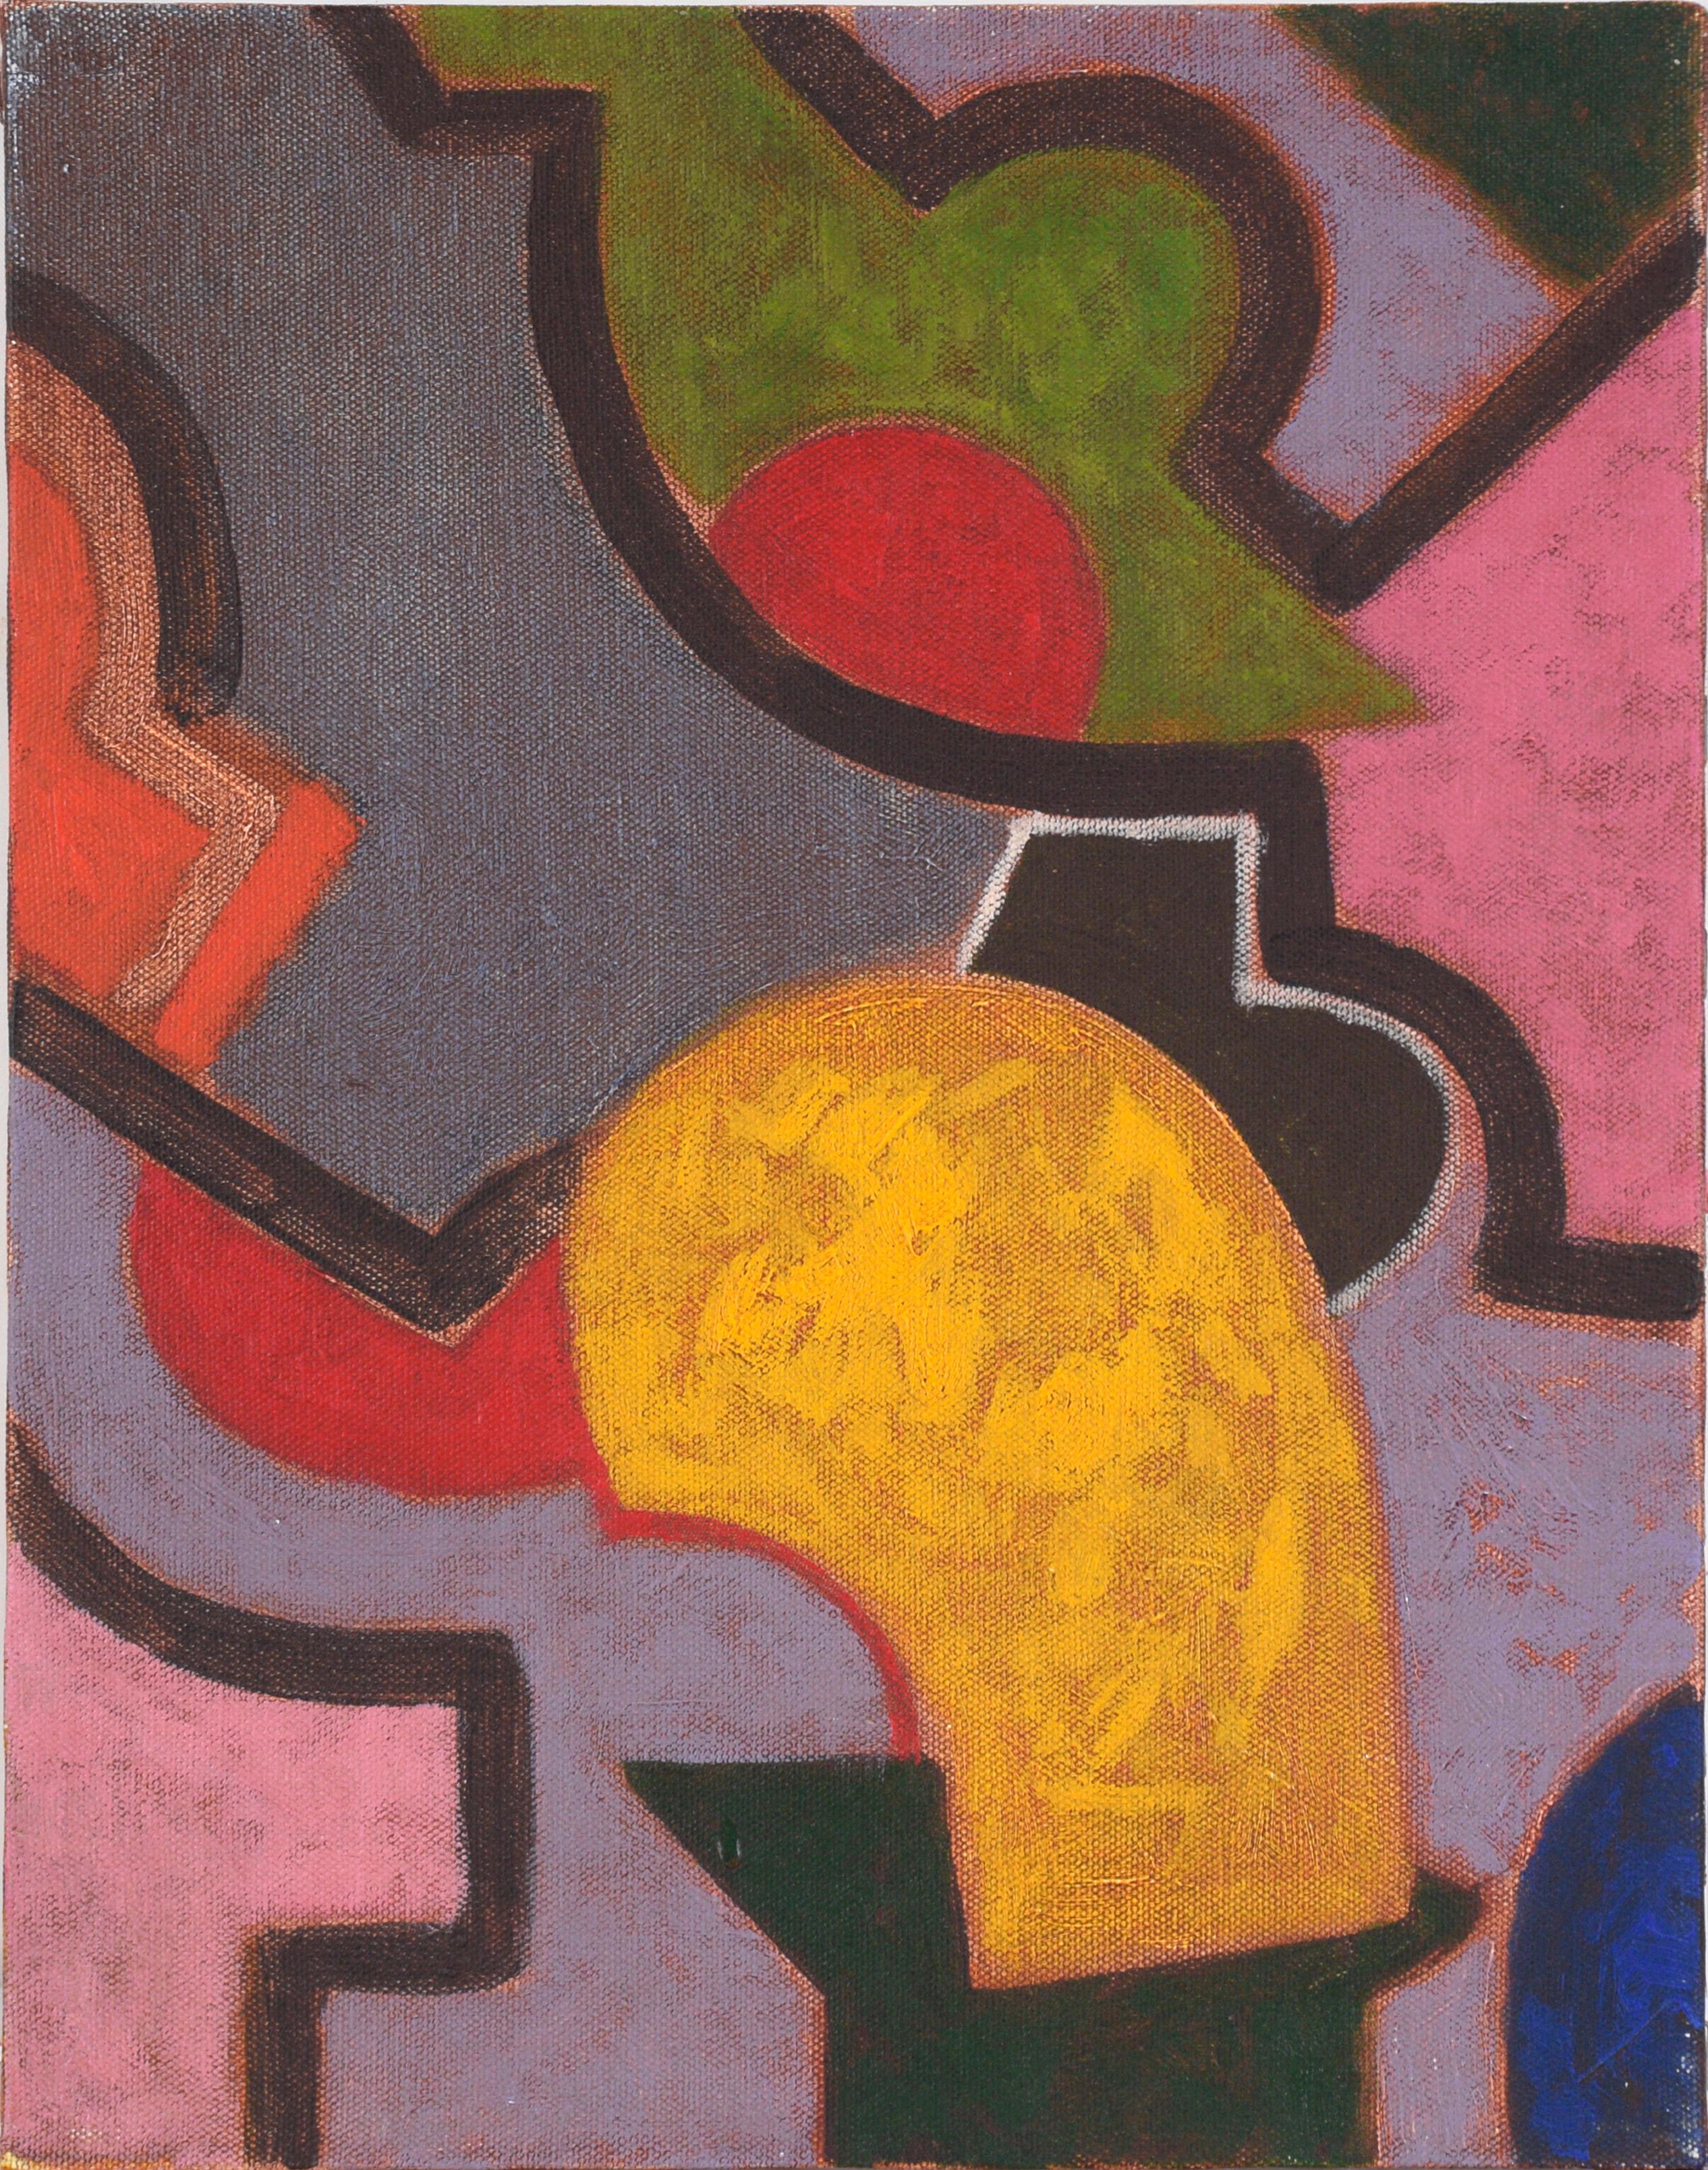 Abstract Painting Rod Norman - "Rhino" Composition géométrique abstraite à l'huile sur toile